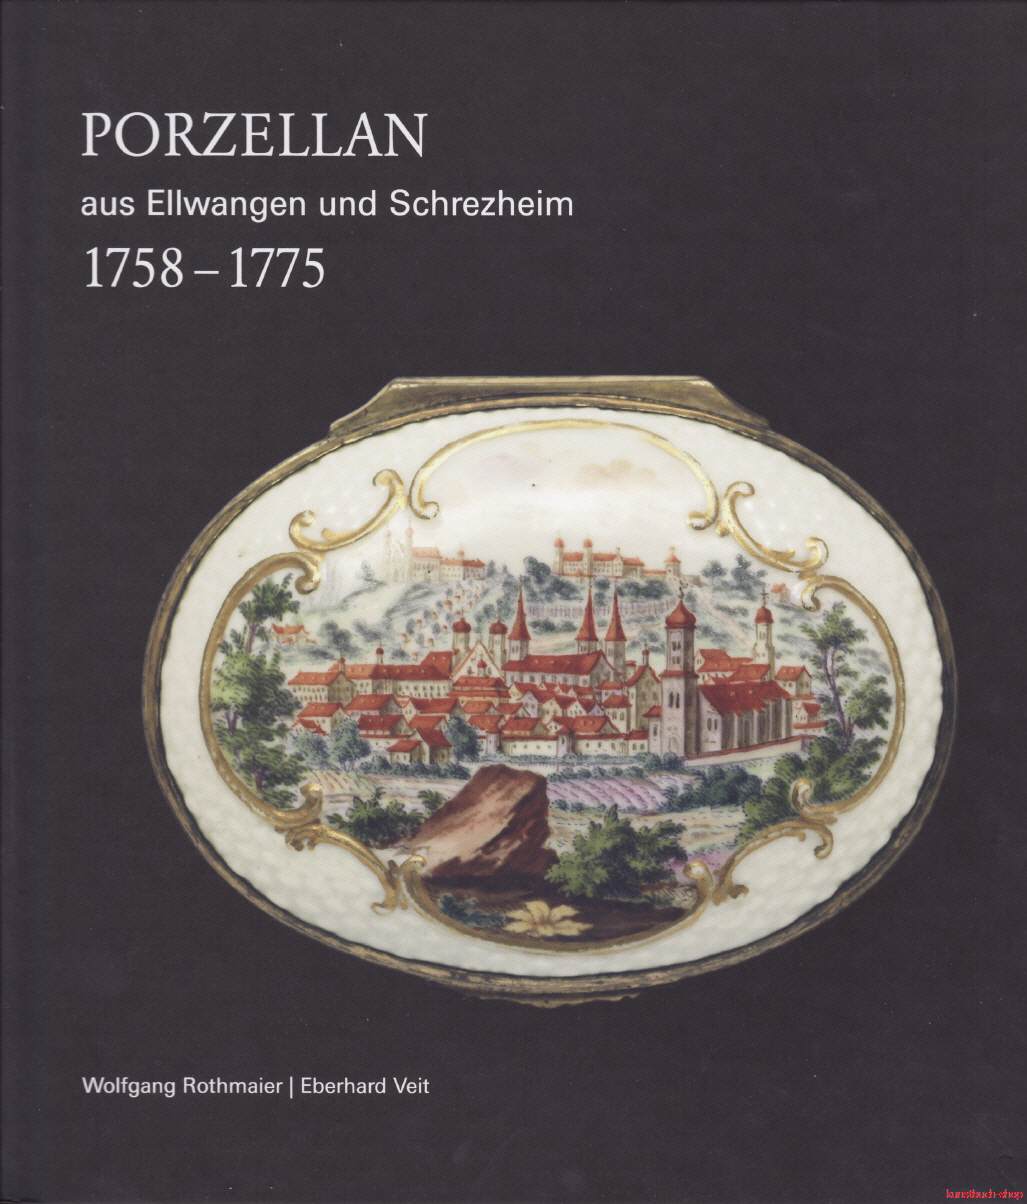 Porzellan aus Ellwangen und Schrezheim 1758-1775